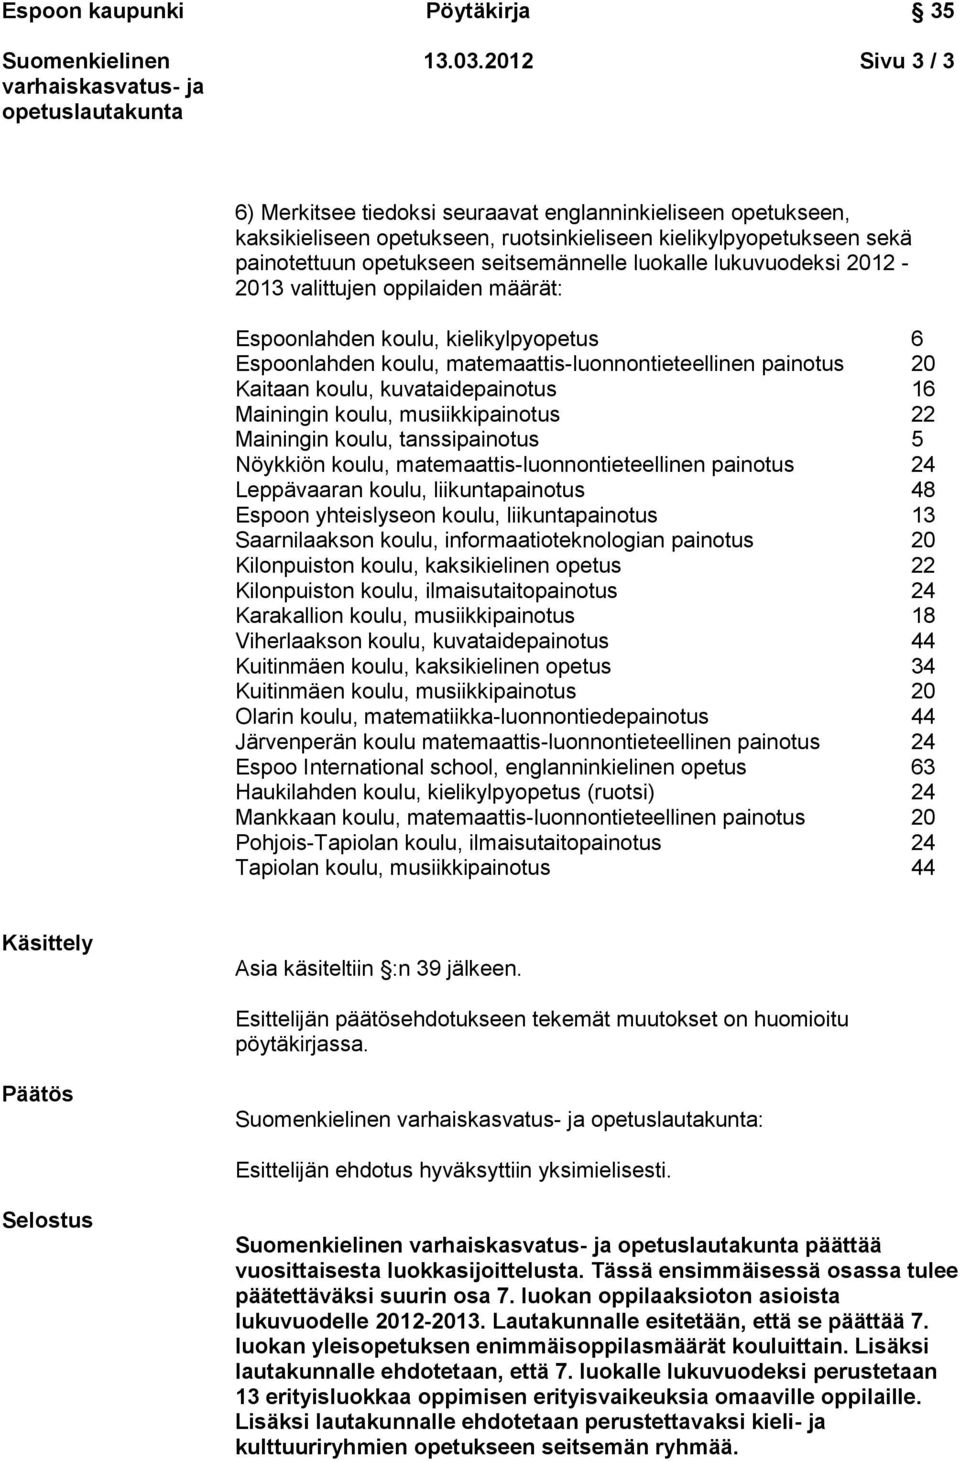 lukuvuodeksi 2012-2013 valittujen oppilaiden määrät: Espoonlahden koulu, kielikylpyopetus 6 Espoonlahden koulu, matemaattis-luonnontieteellinen painotus 20 Kaitaan koulu, kuvataidepainotus 16